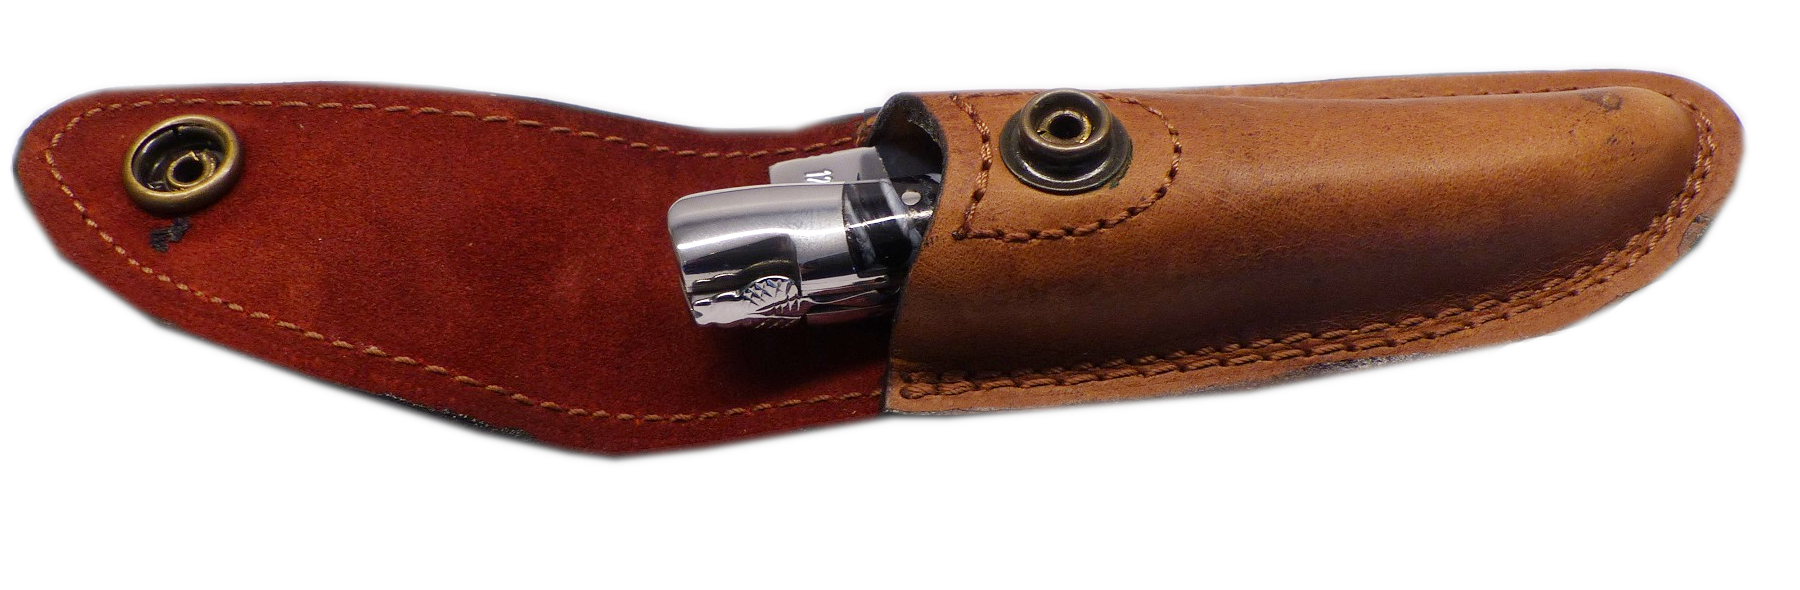 LAGUIOLE en Aubrac Original Taschenmesser Griff Mammutbackenzahn mit Gürtel Ledertasche aus Büffelleder